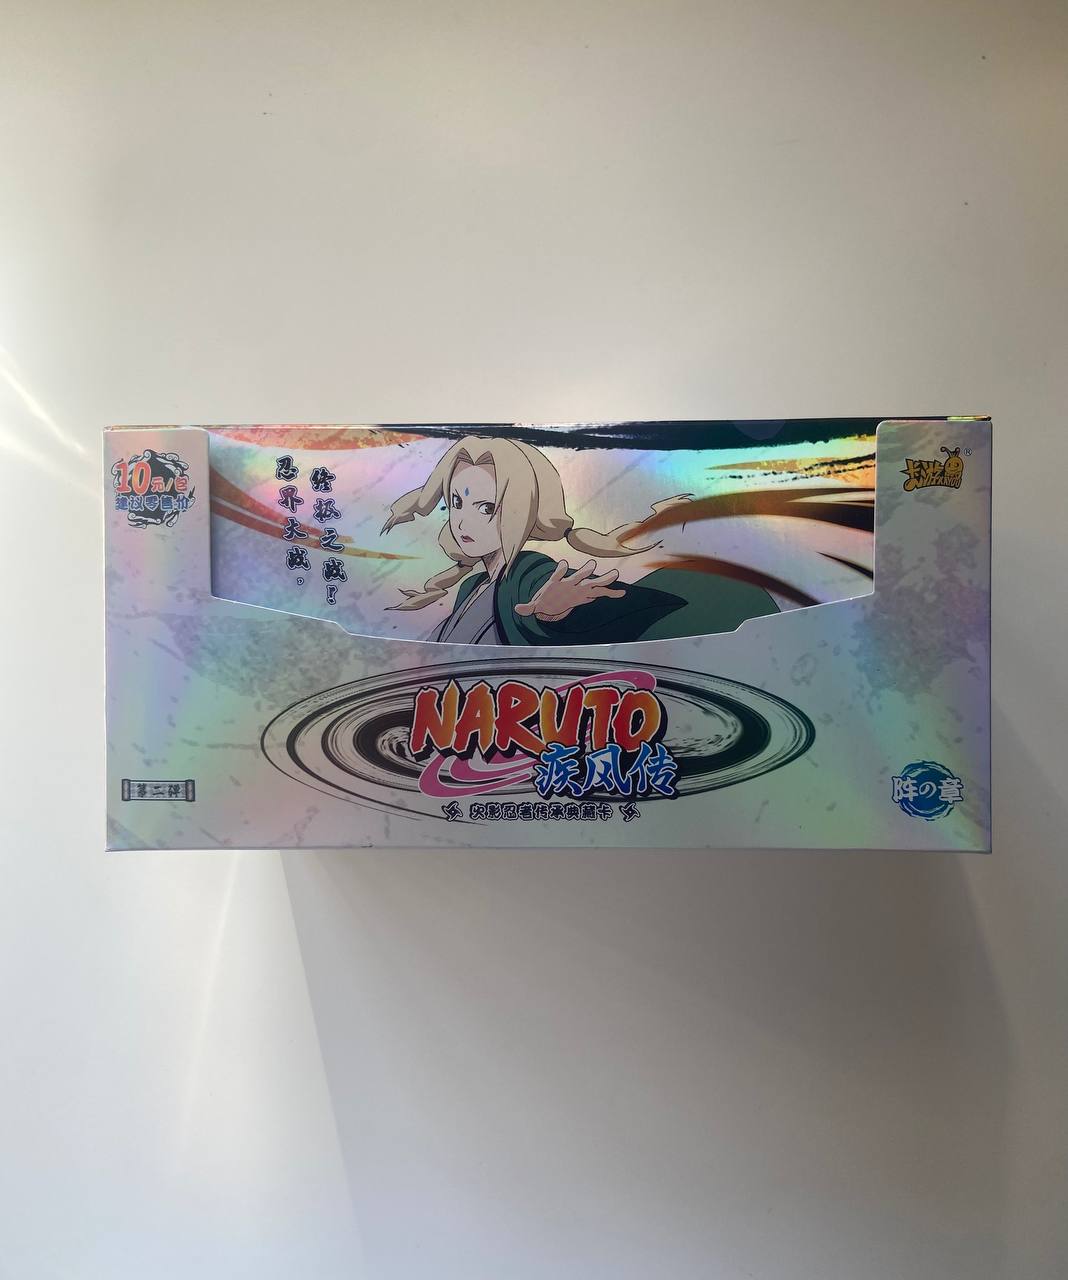 Naruto Kayou Tier 4 Wave 2 Display Card Box Sealed